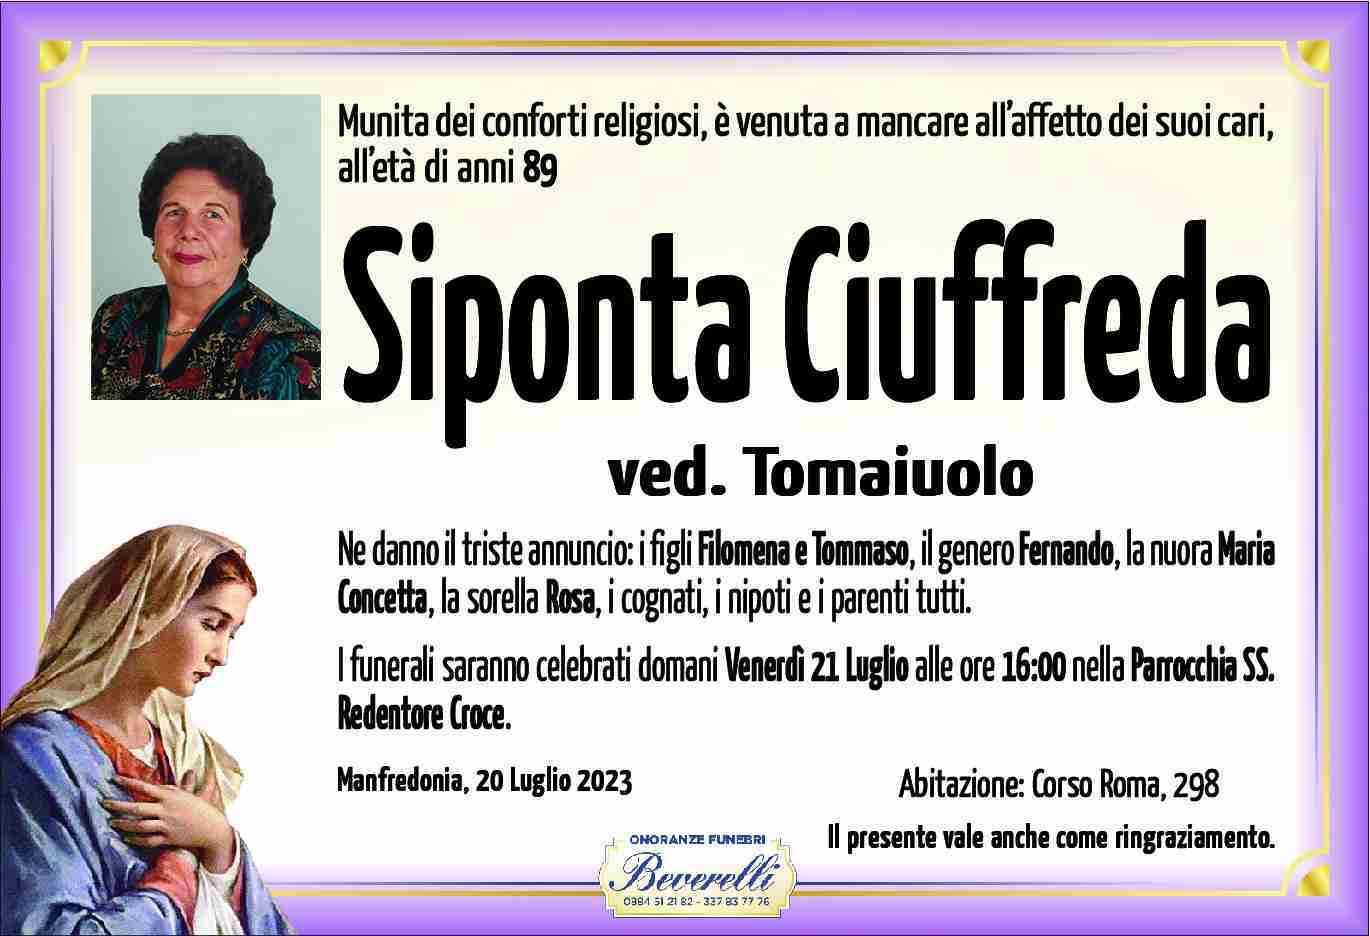 Siponta Ciuffreda